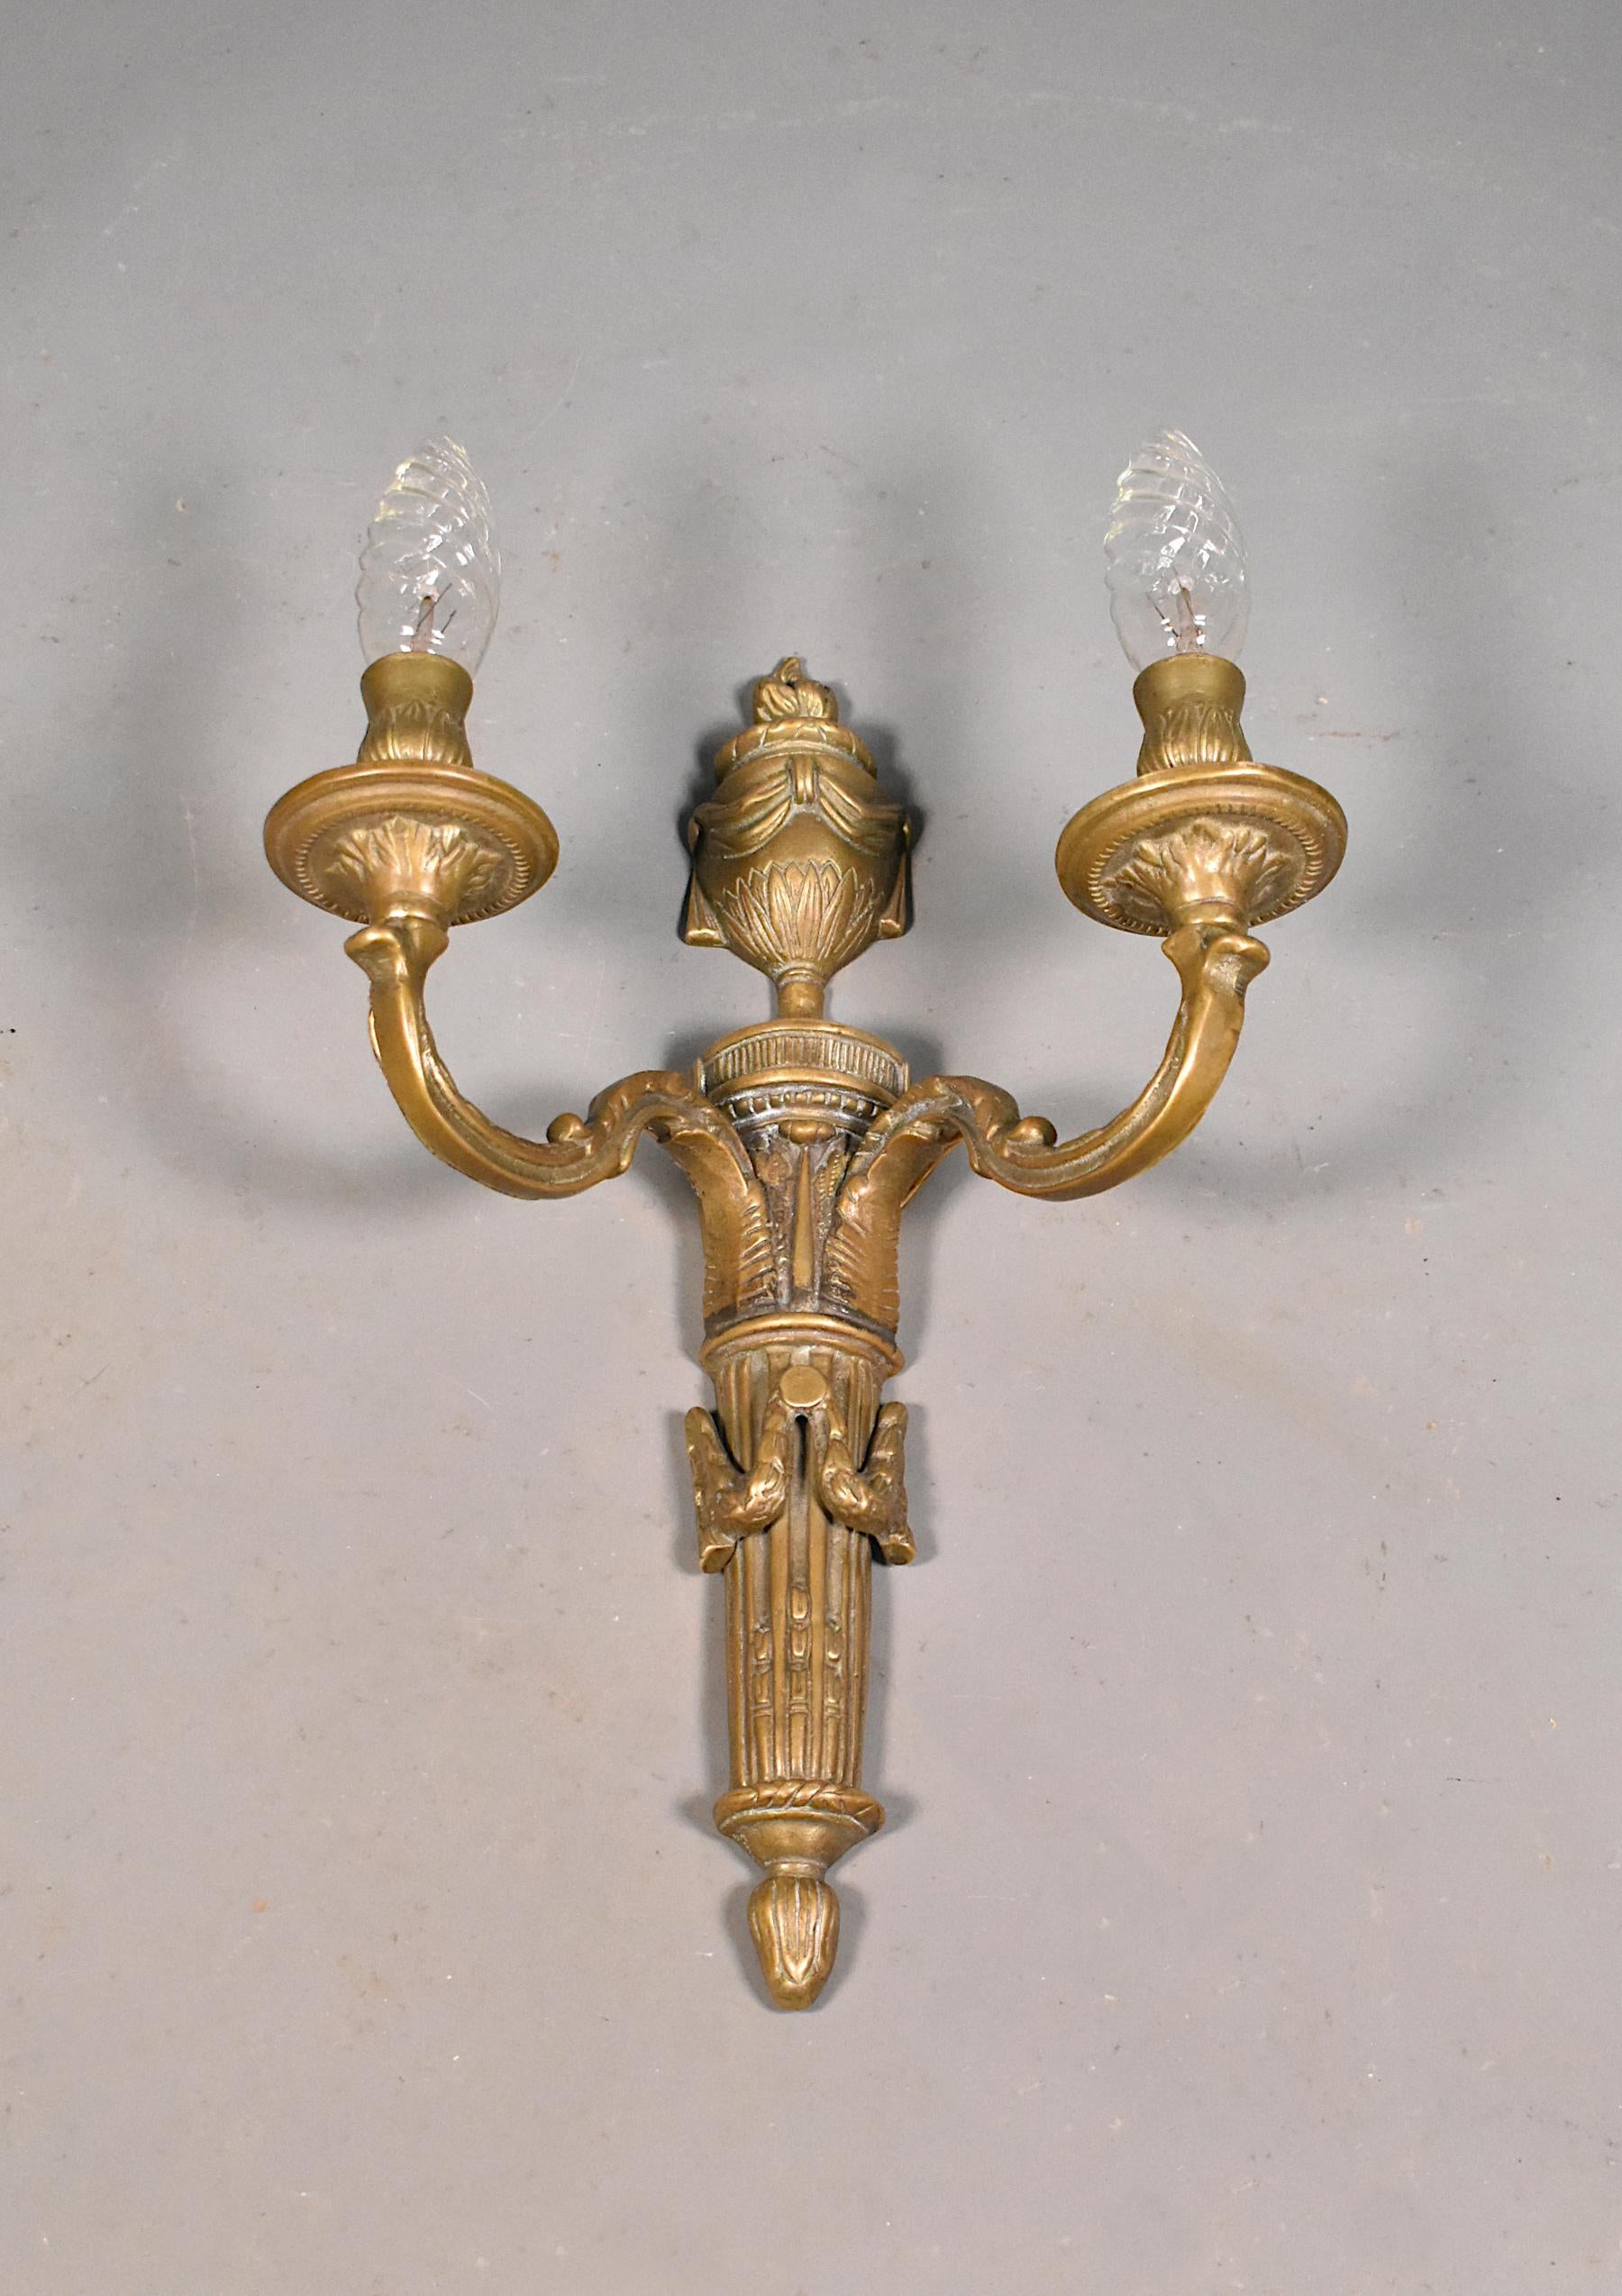 Grande applique murale ancienne en bronze Napoléon III (19ème siècle).

Cette grande applique murale décorative en bronze est dotée d'accoudoirs à détails floraux. Les bras supportent deux bougies décoratives. 

Au sommet se trouve une urne